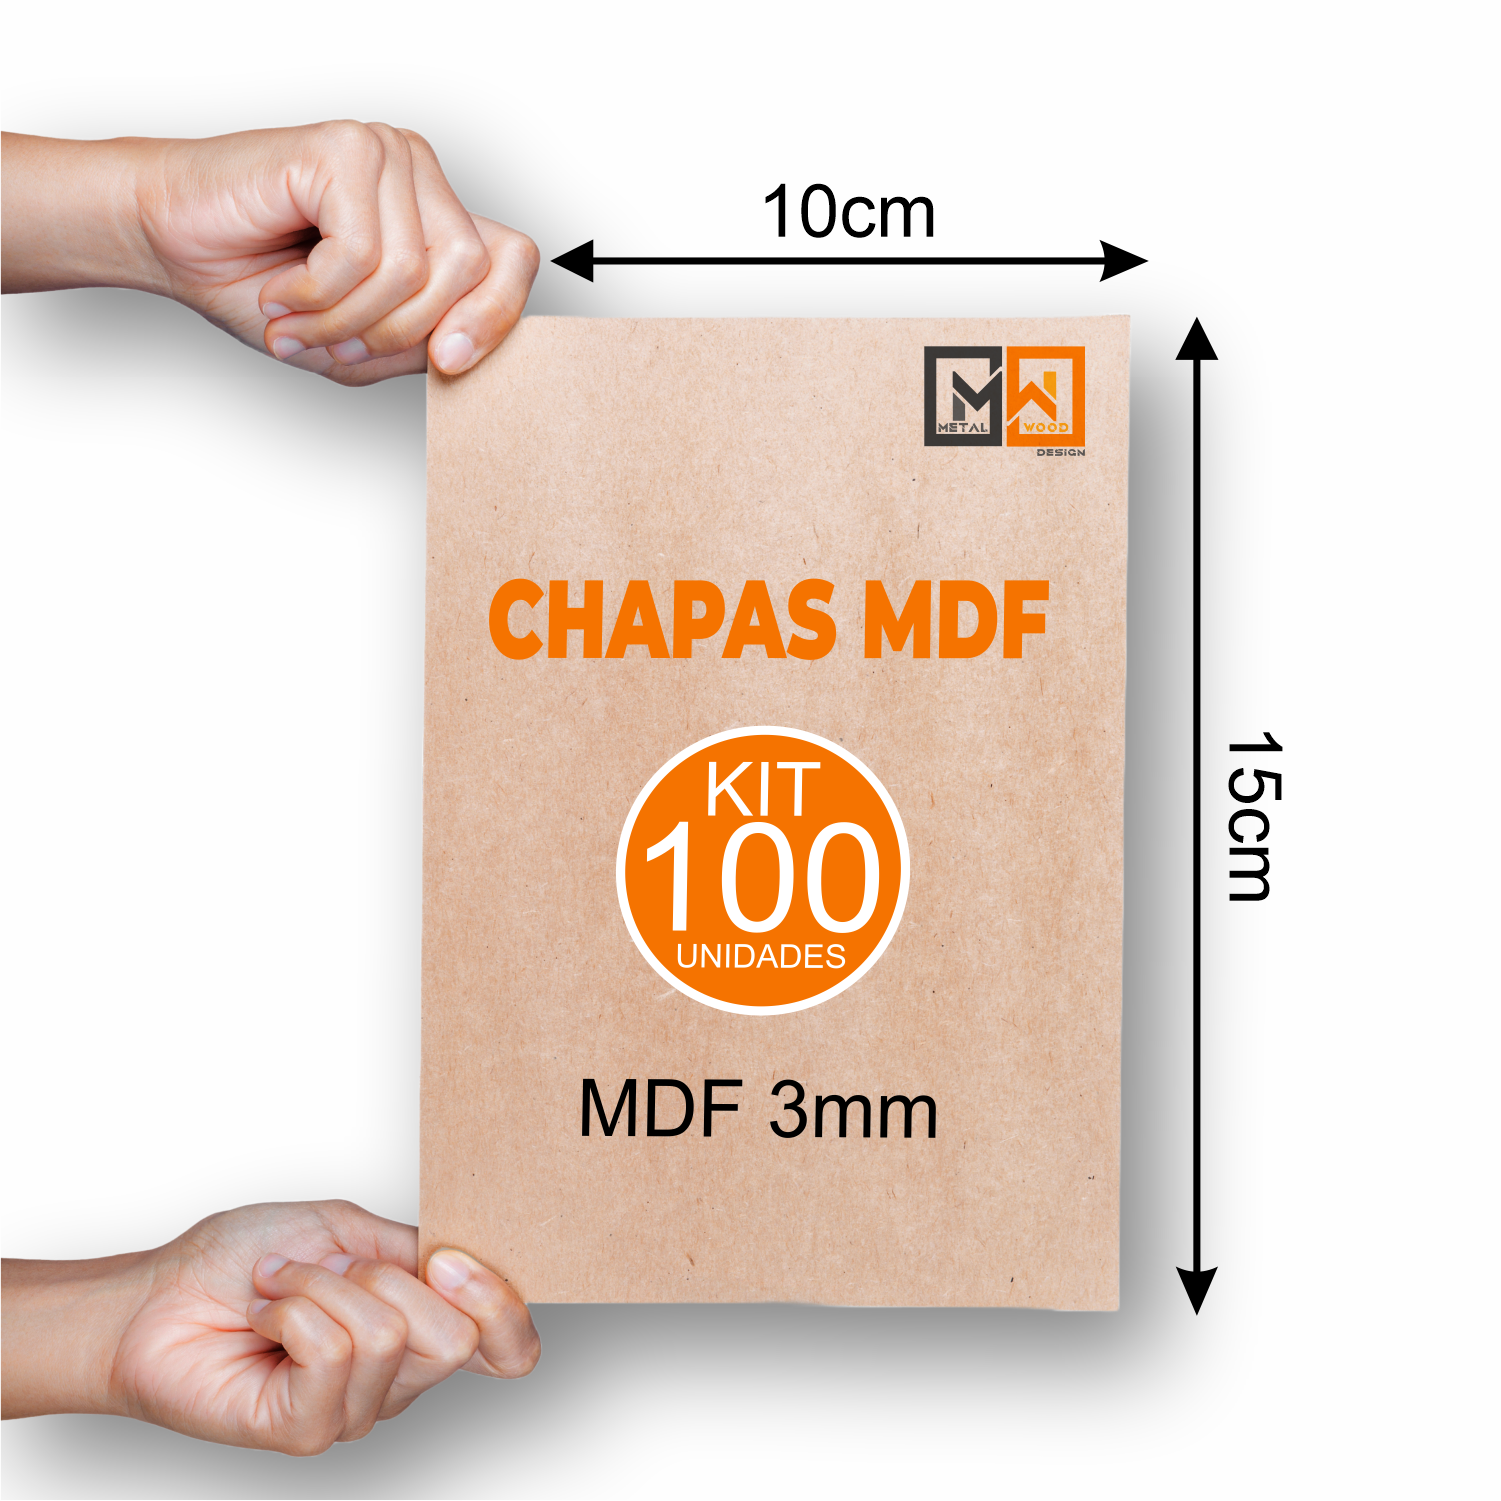 Chapa Mdf Cru 10x15 Kit 100 3mm Placas Artesanato Decoração - 3